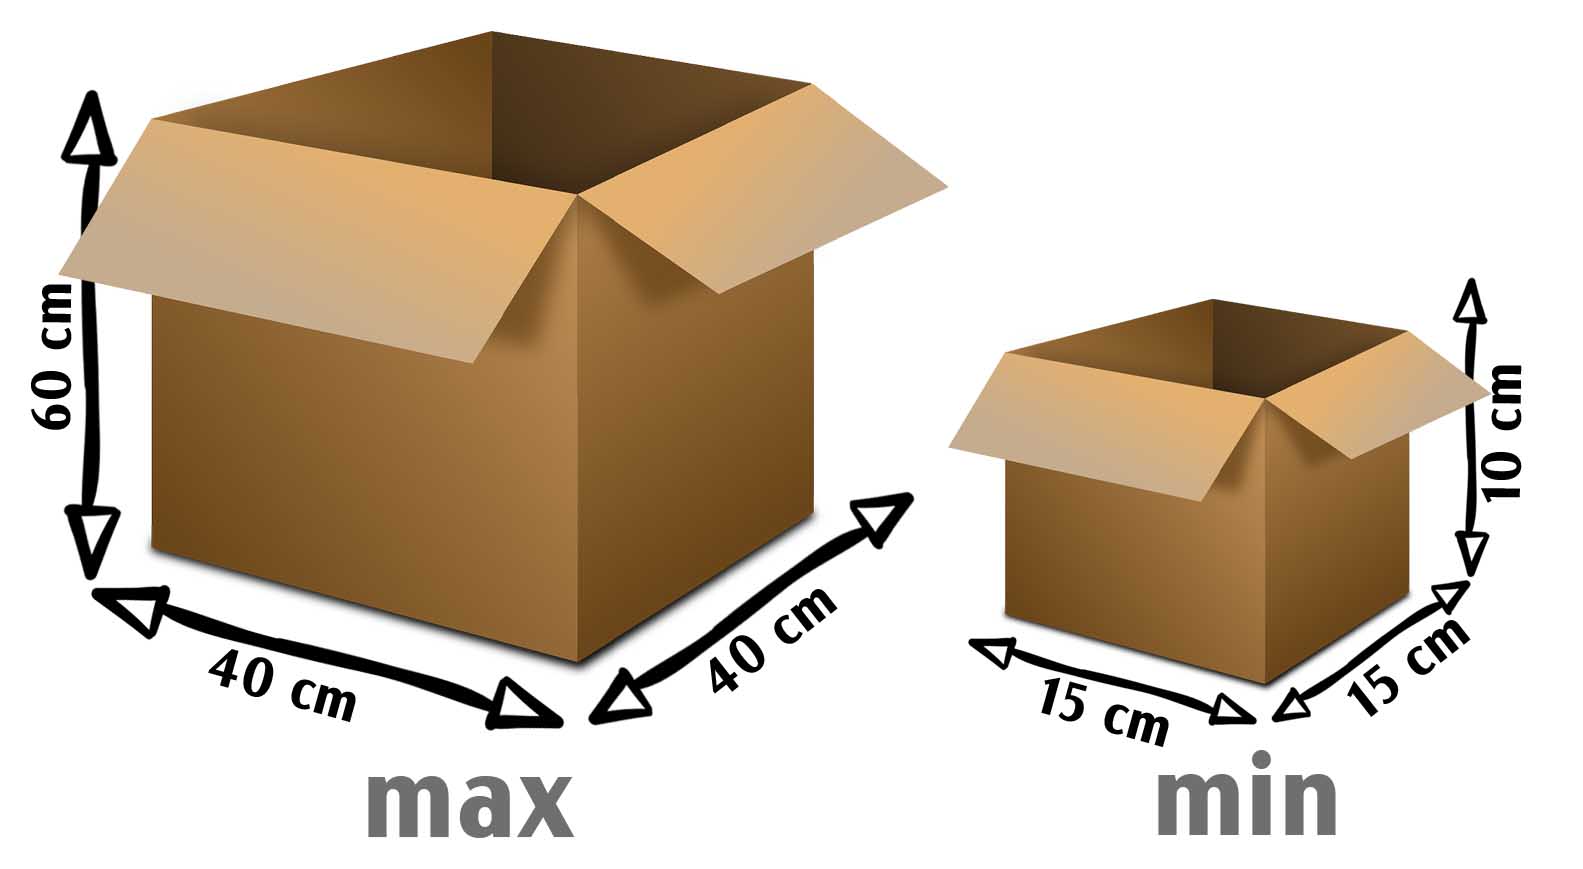 Размеры коробок для влдбериз моно и микс